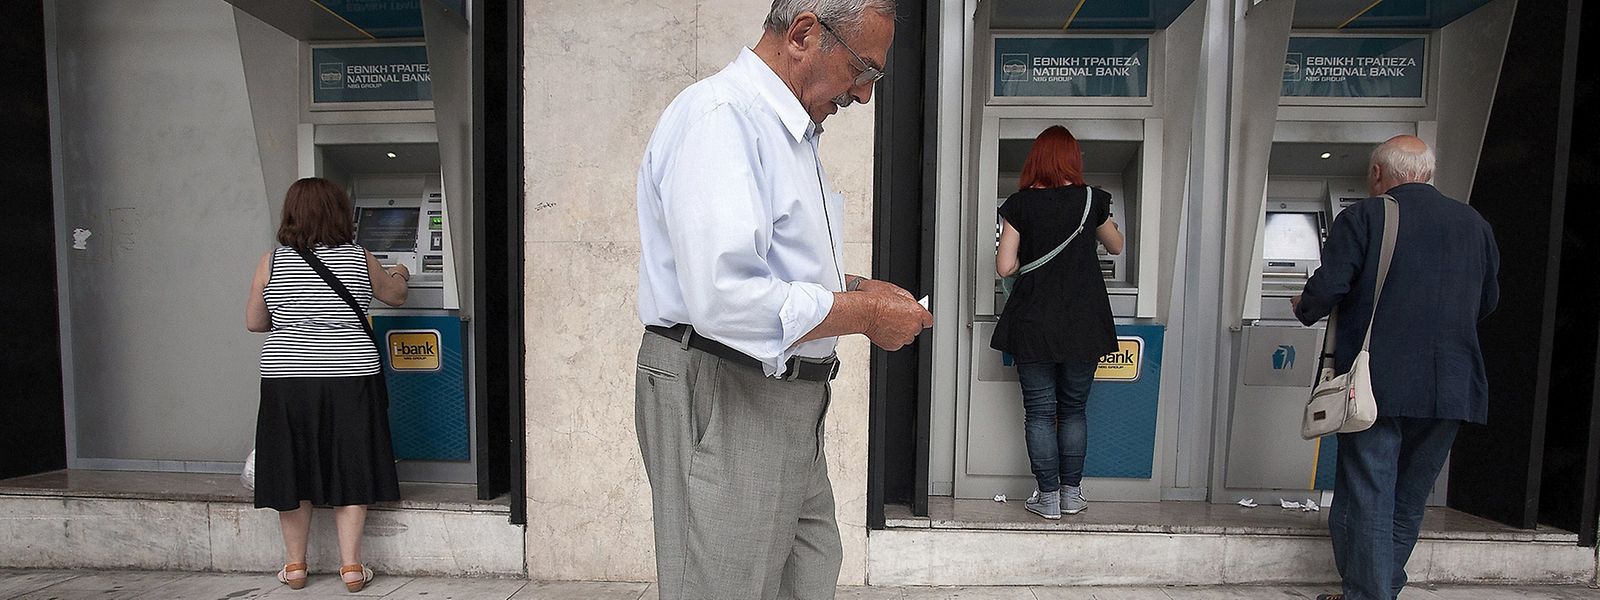 Unmittelbar nach der Referendumsankündigung bildeten sich vor den Geldautomaten in Griechenland lange Schlangen. Einige Geldautomaten waren wegen des Ansturms leer, berichteten Augenzeugen.